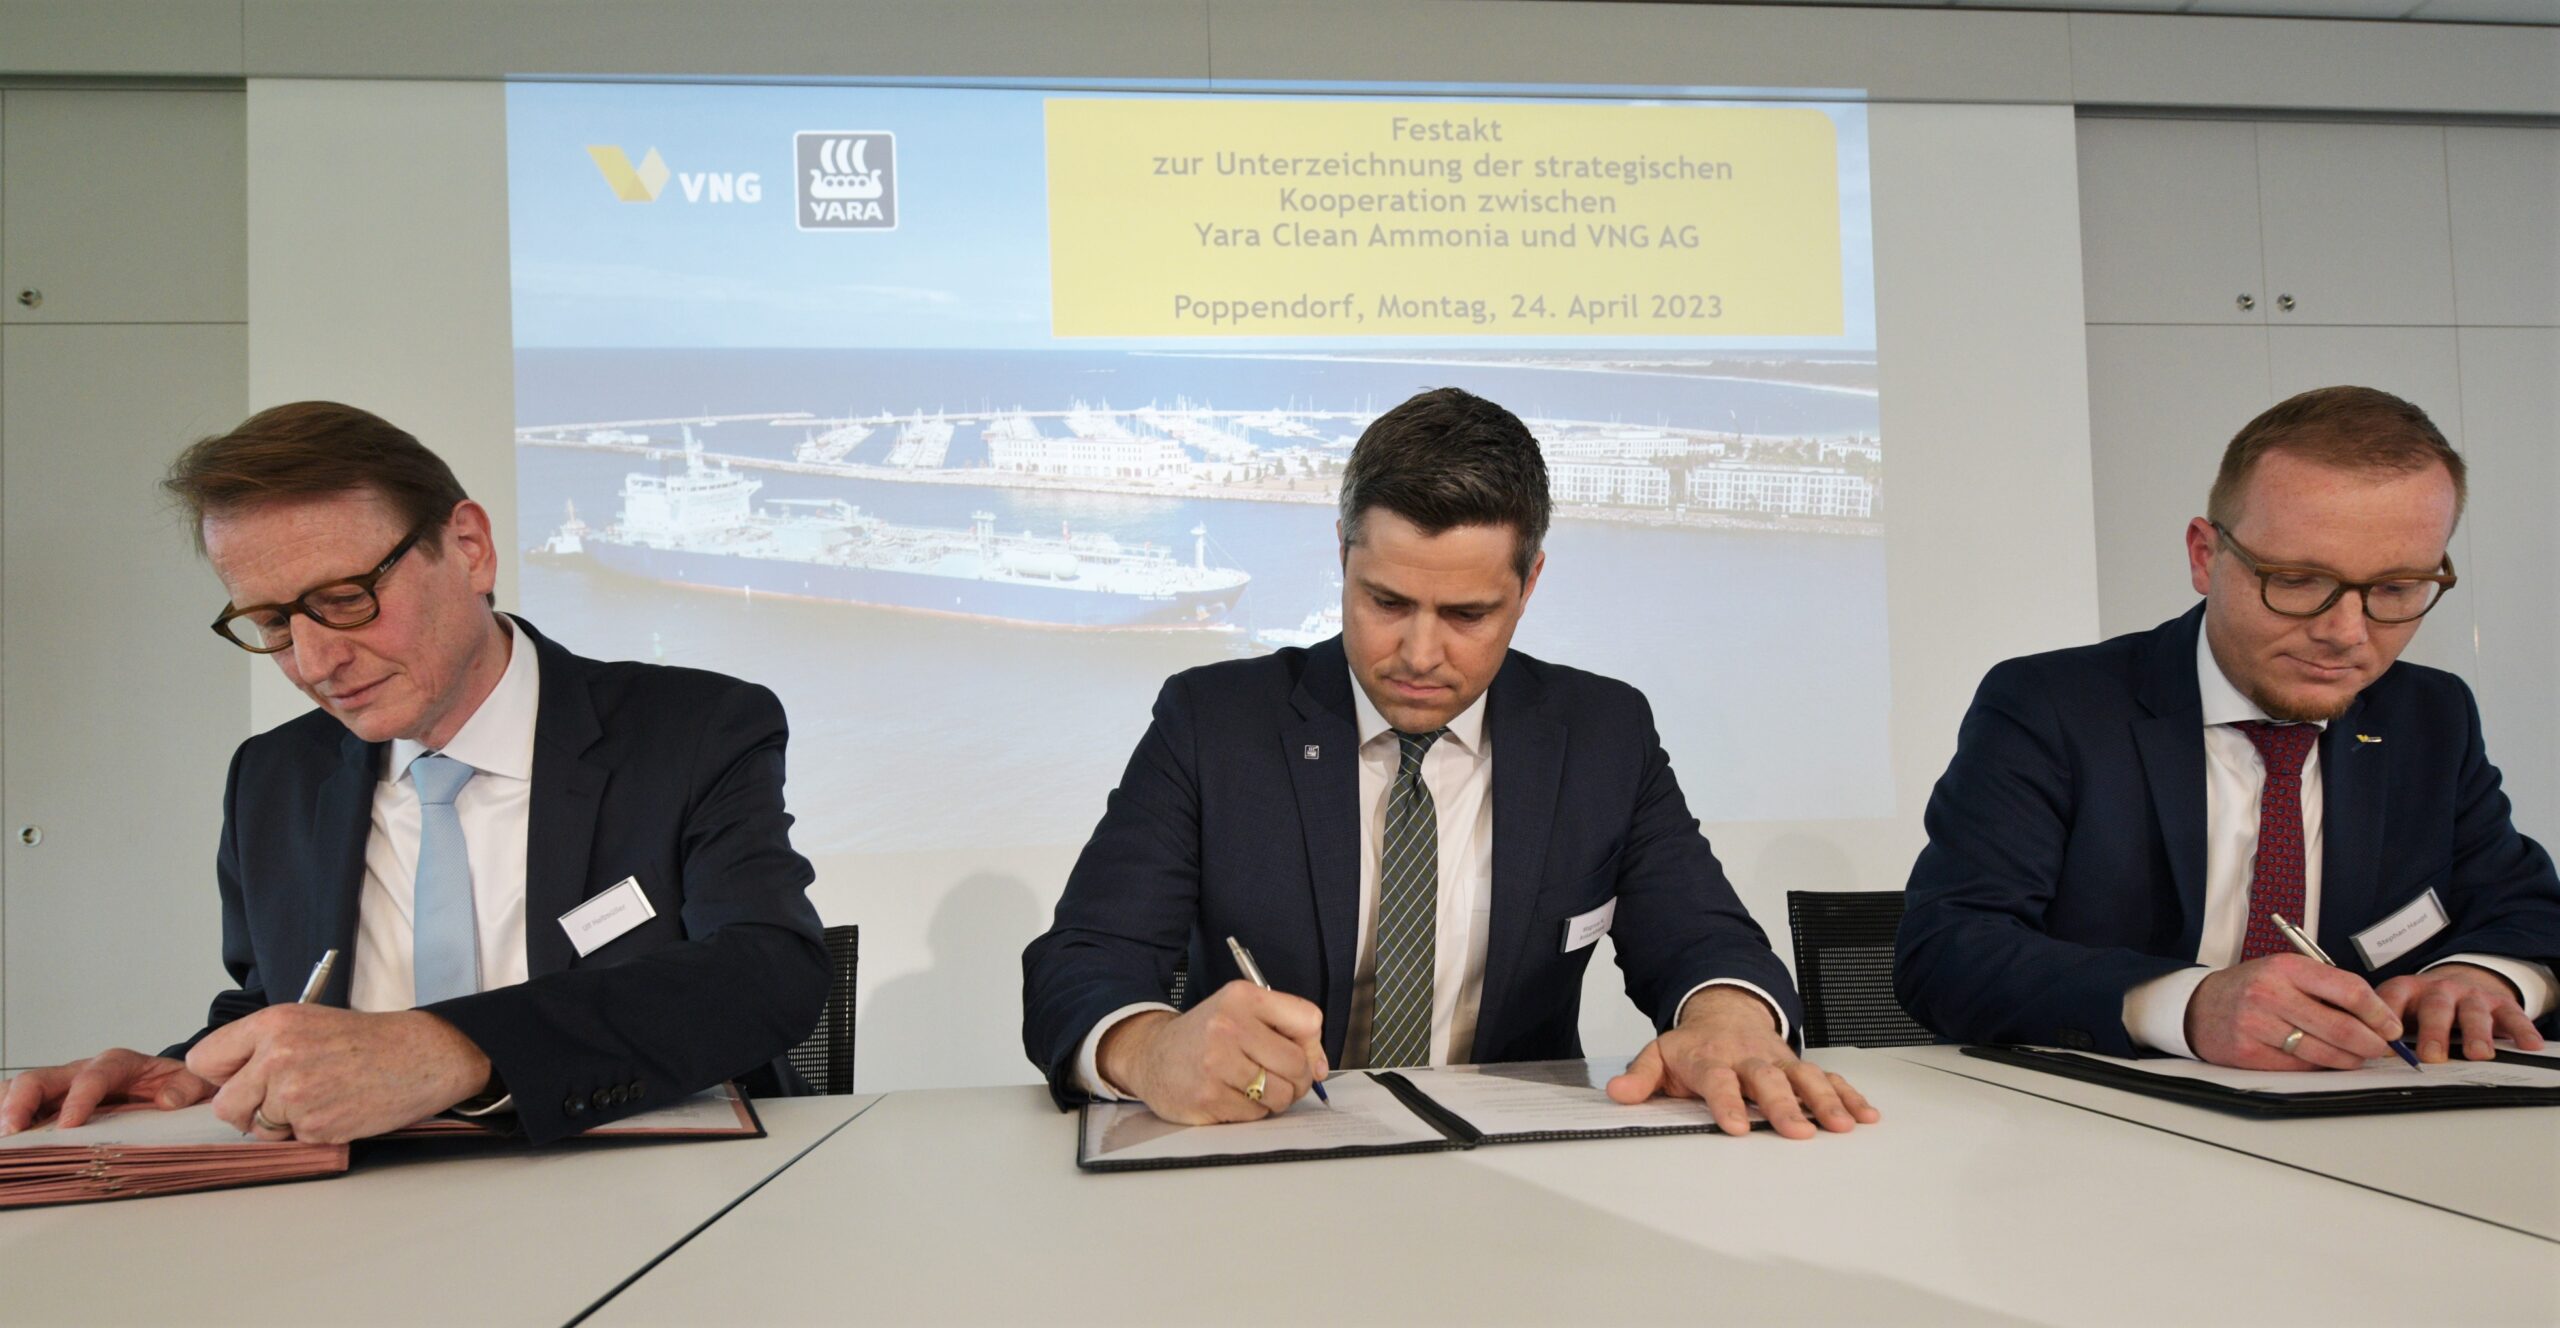 Ulf Heitmüller (VNG AG), Magnus Ankarstrand (YARA) und Stephan Haupt (VNG H&V) unterzeichnen offizielle Kooperationsvereinbarung